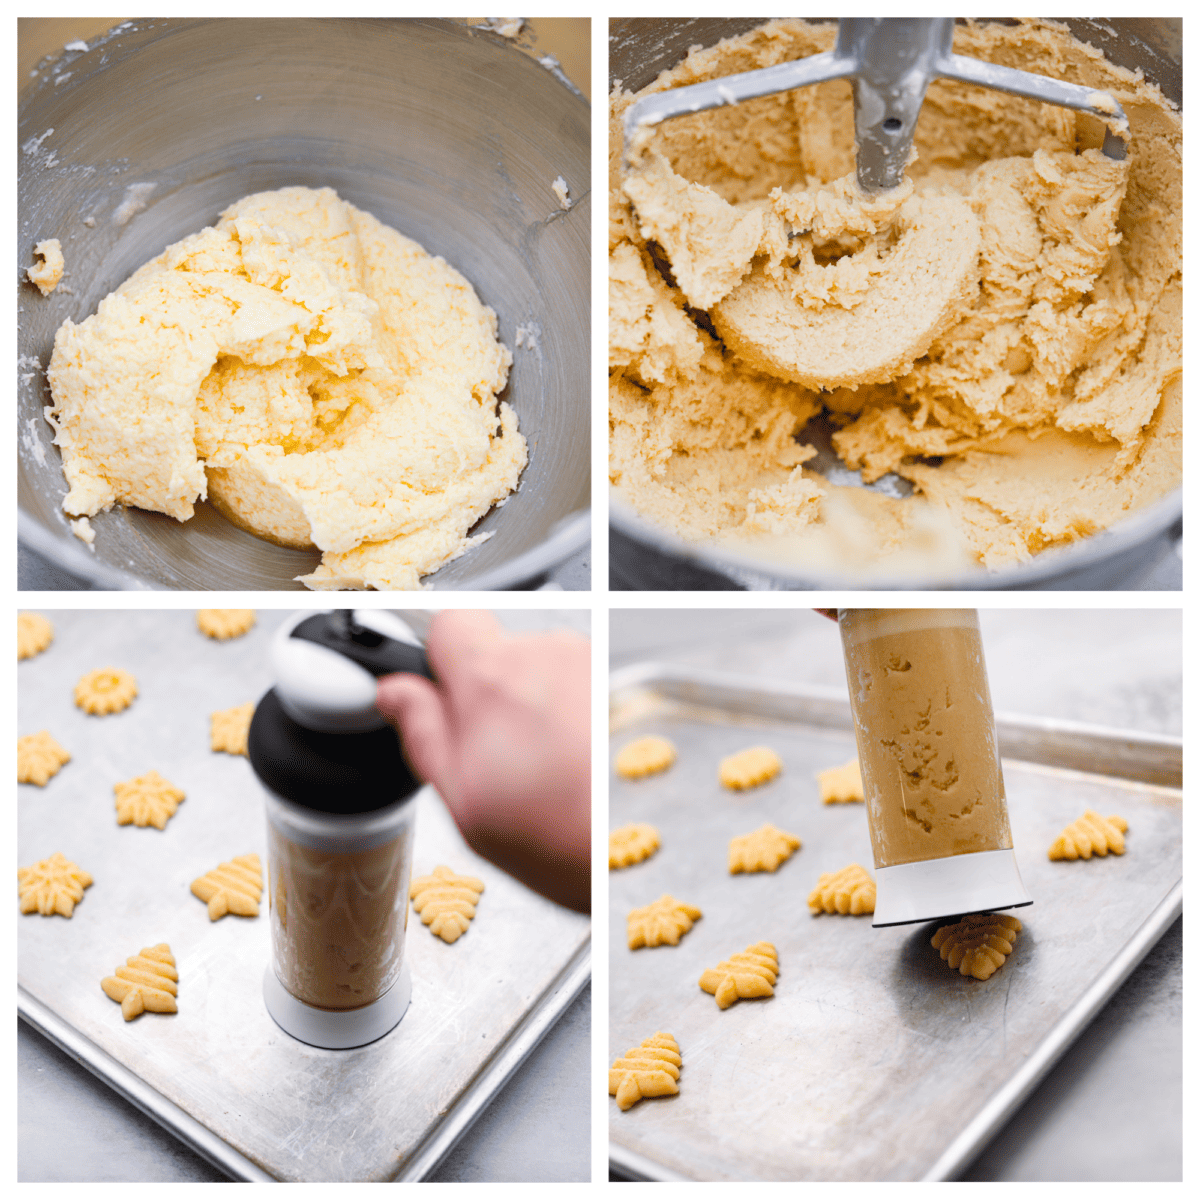 Kolaż składający się z 4 zdjęć przedstawiający przygotowywanie ciasta i przepuszczanie go przez prasę do ciastek.